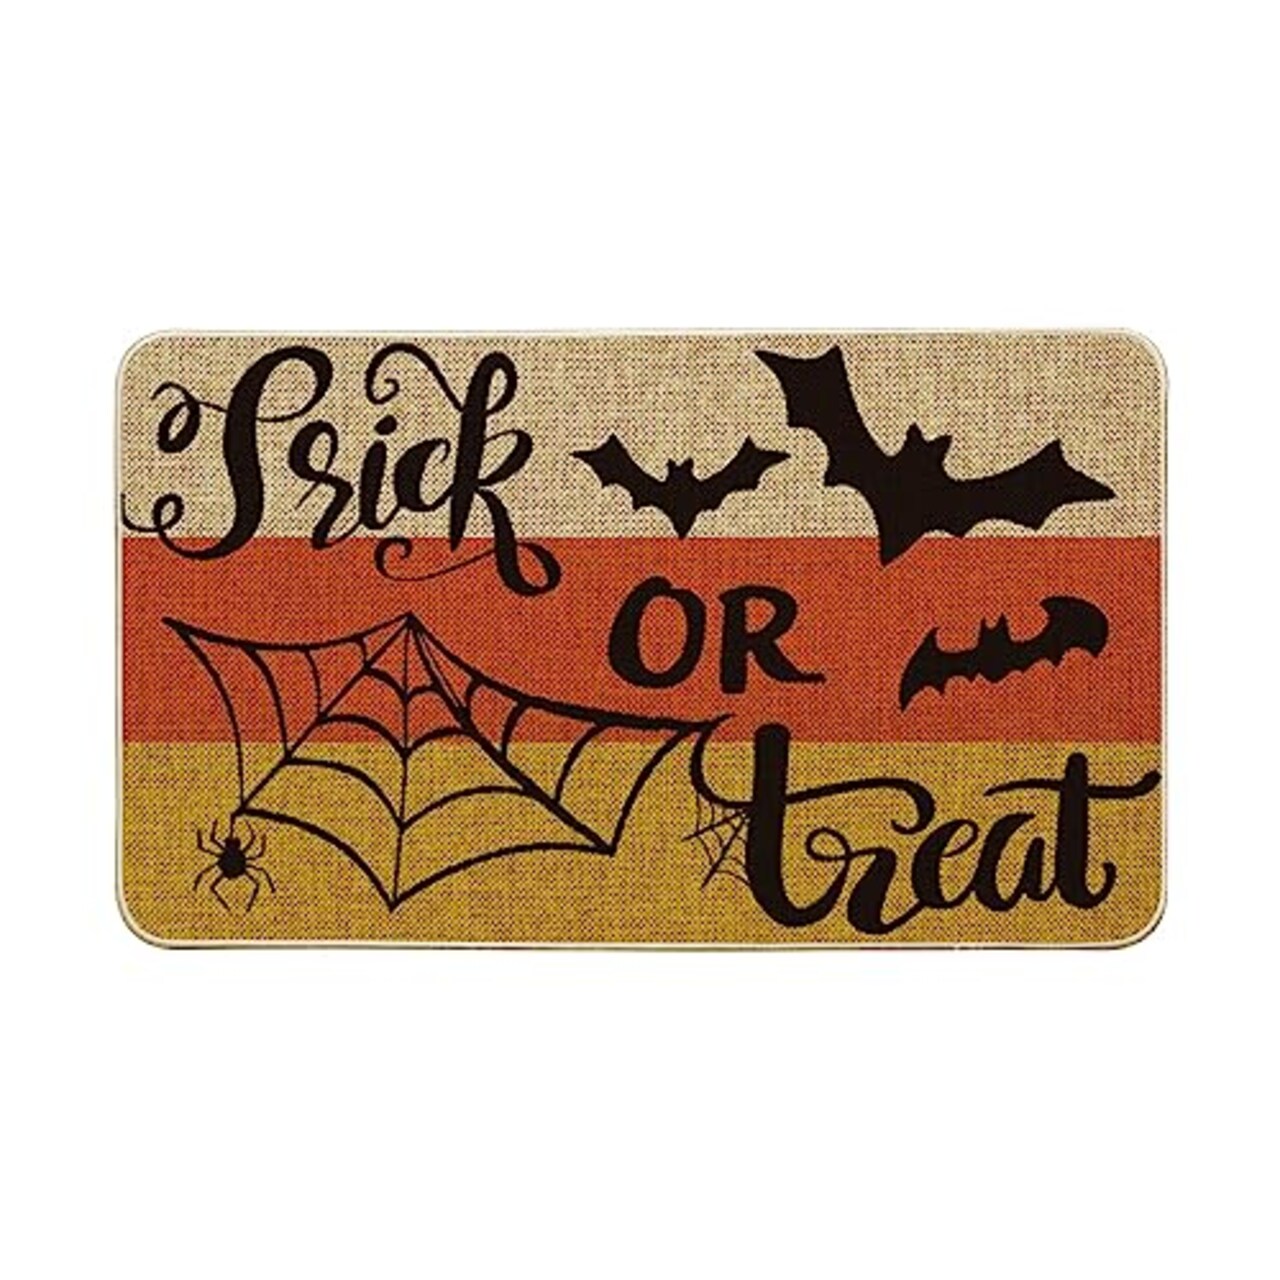 Artoid Mode Trick or Treat Decorative Doormat, Seasonal Fall Halloween Bats Spider Web Low-Profile Floor Mat Switch Mat for Indoor Outdoor 17 x 29 Inch